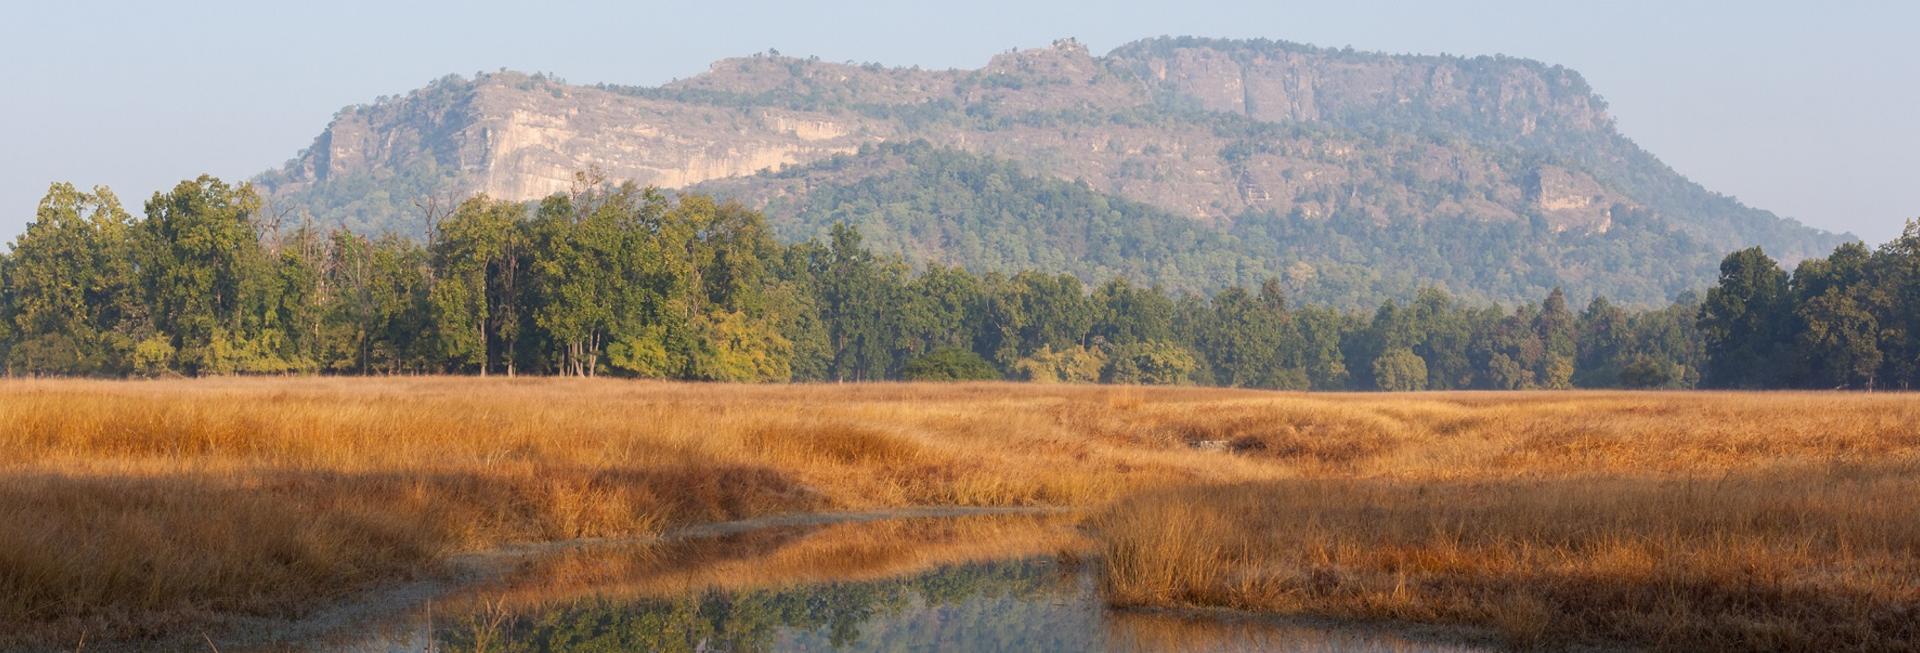 Landscape, Bandhavgarh National Park